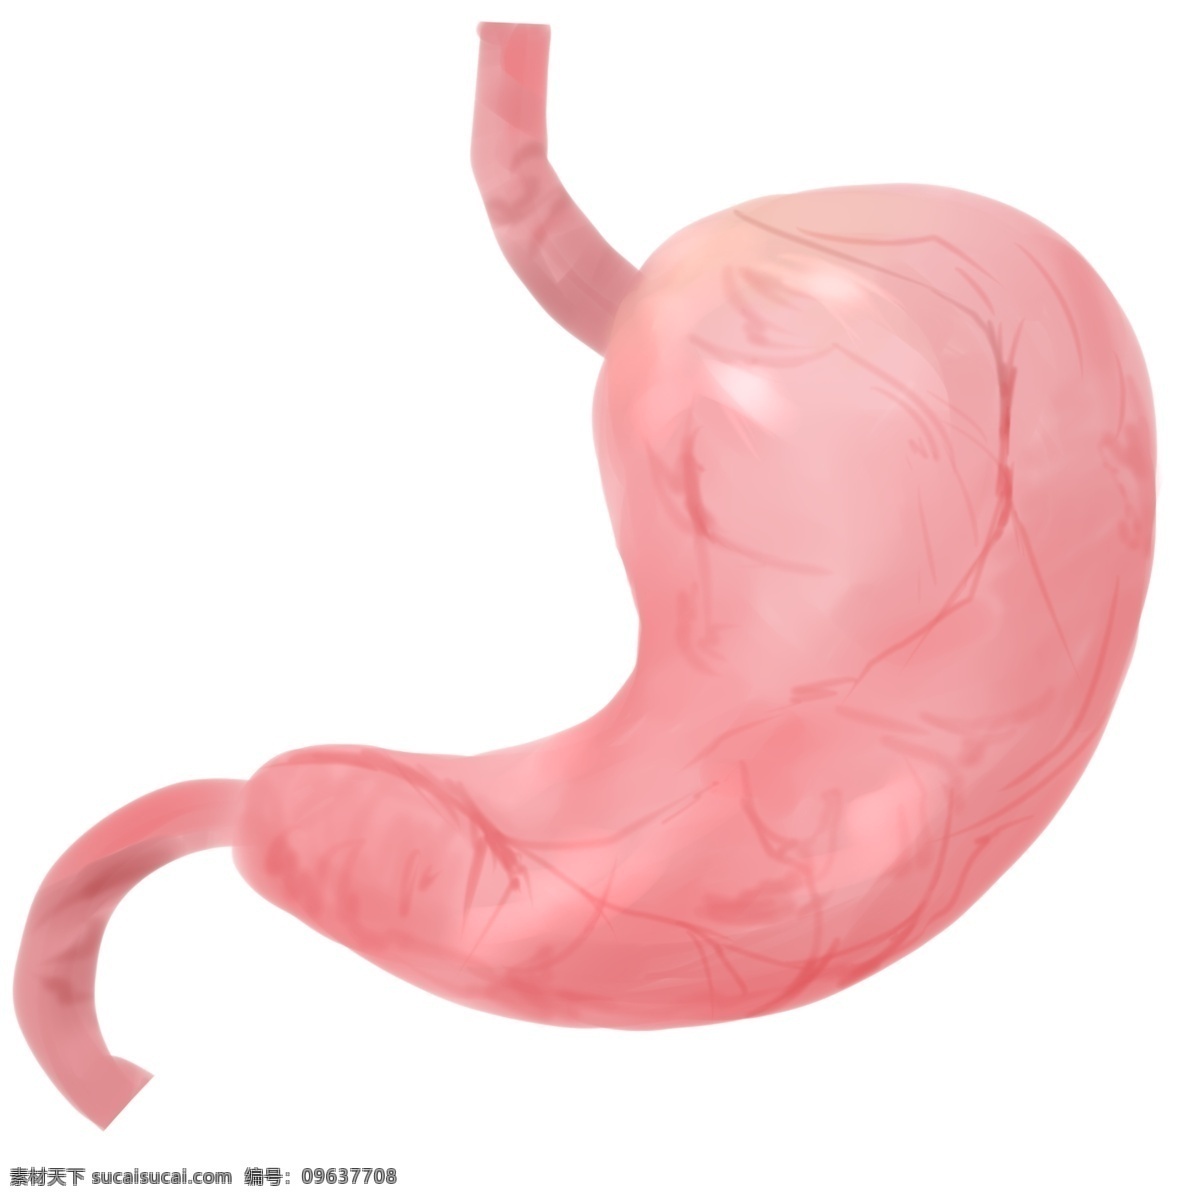 人体 器官 胃 脏 插画 健康的胃脏 卡通插画 人体器官 身体器官 人体脏器 运作器官 粉色的胃脏